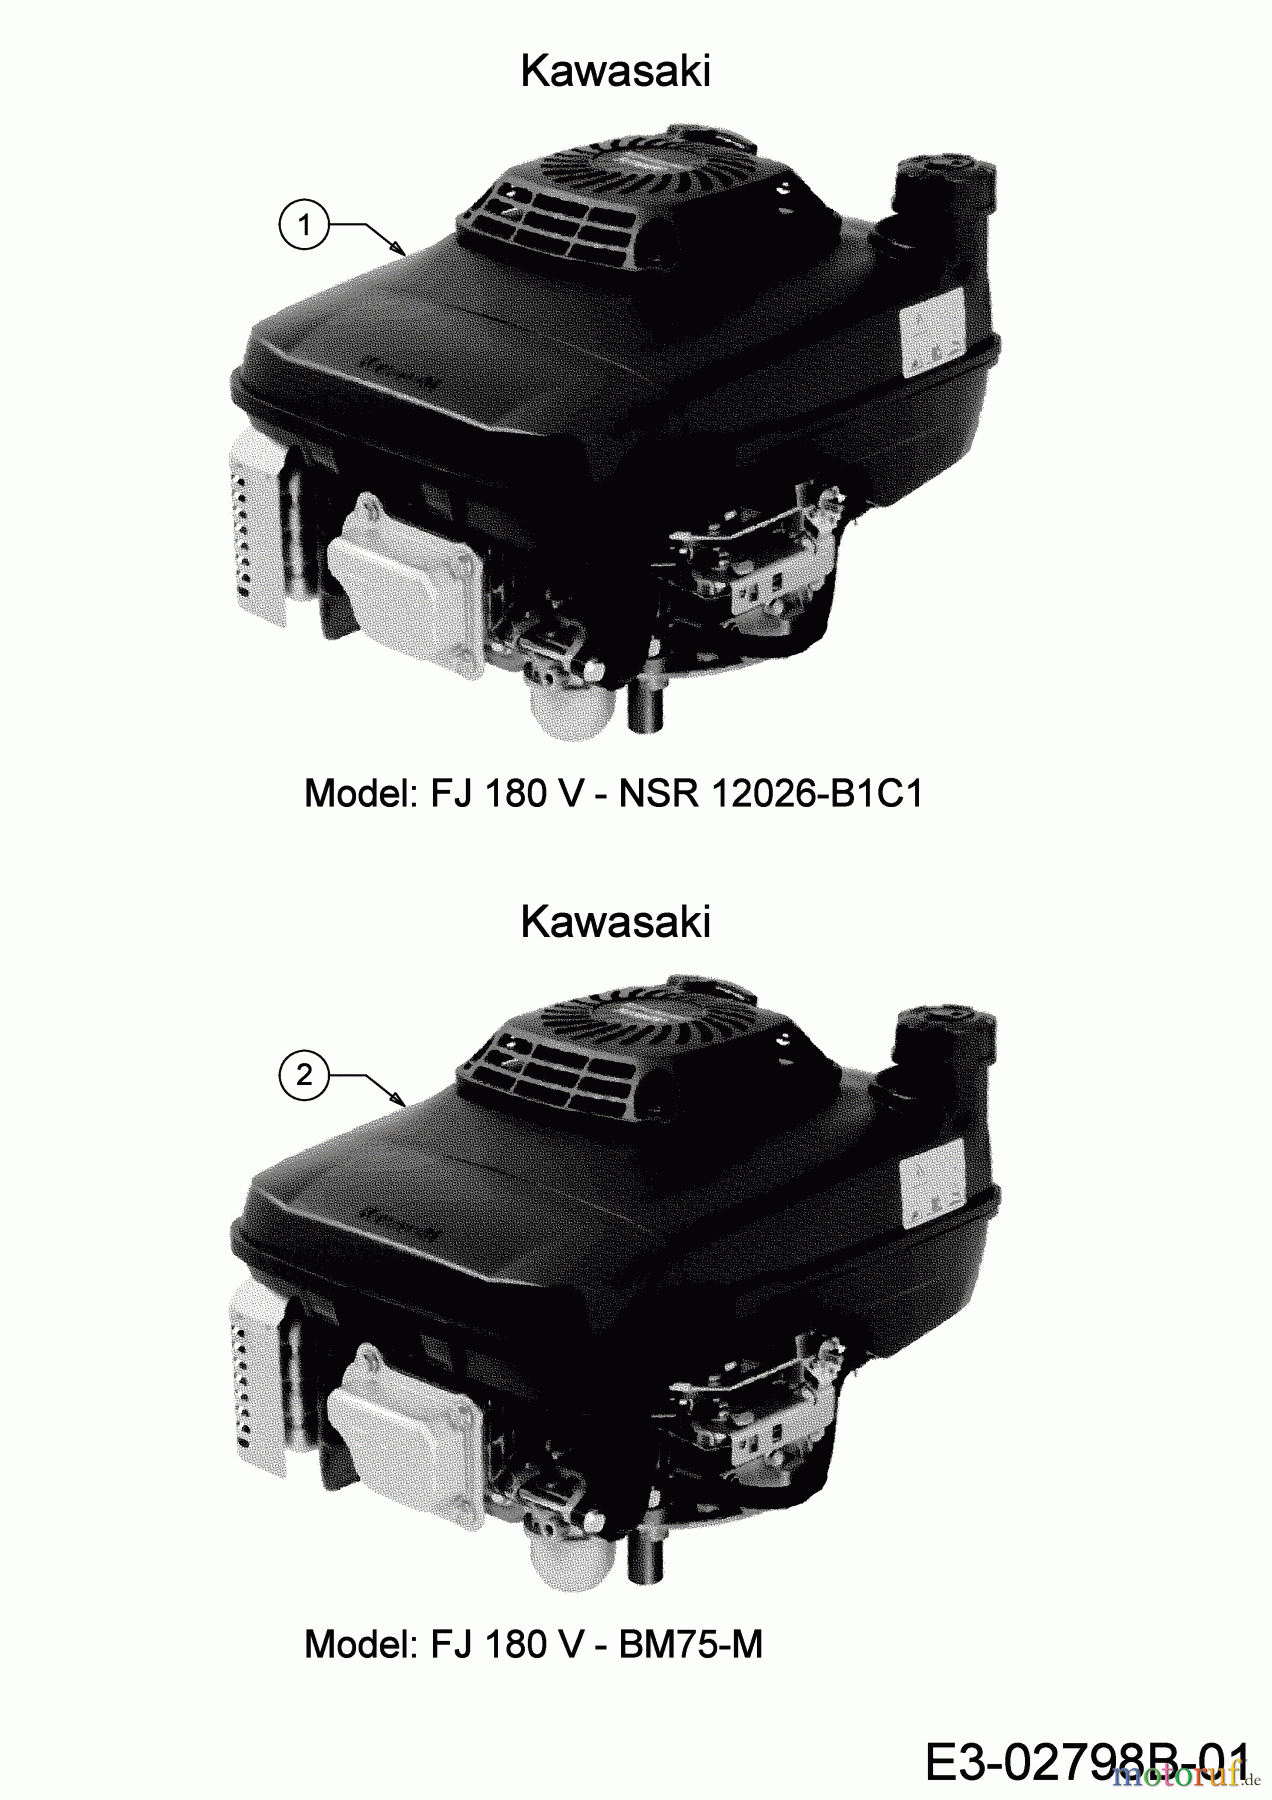  MTD Motormäher mit Antrieb SP 53 HWK 12C-PD7D600 (2020) Motor Kawasaki